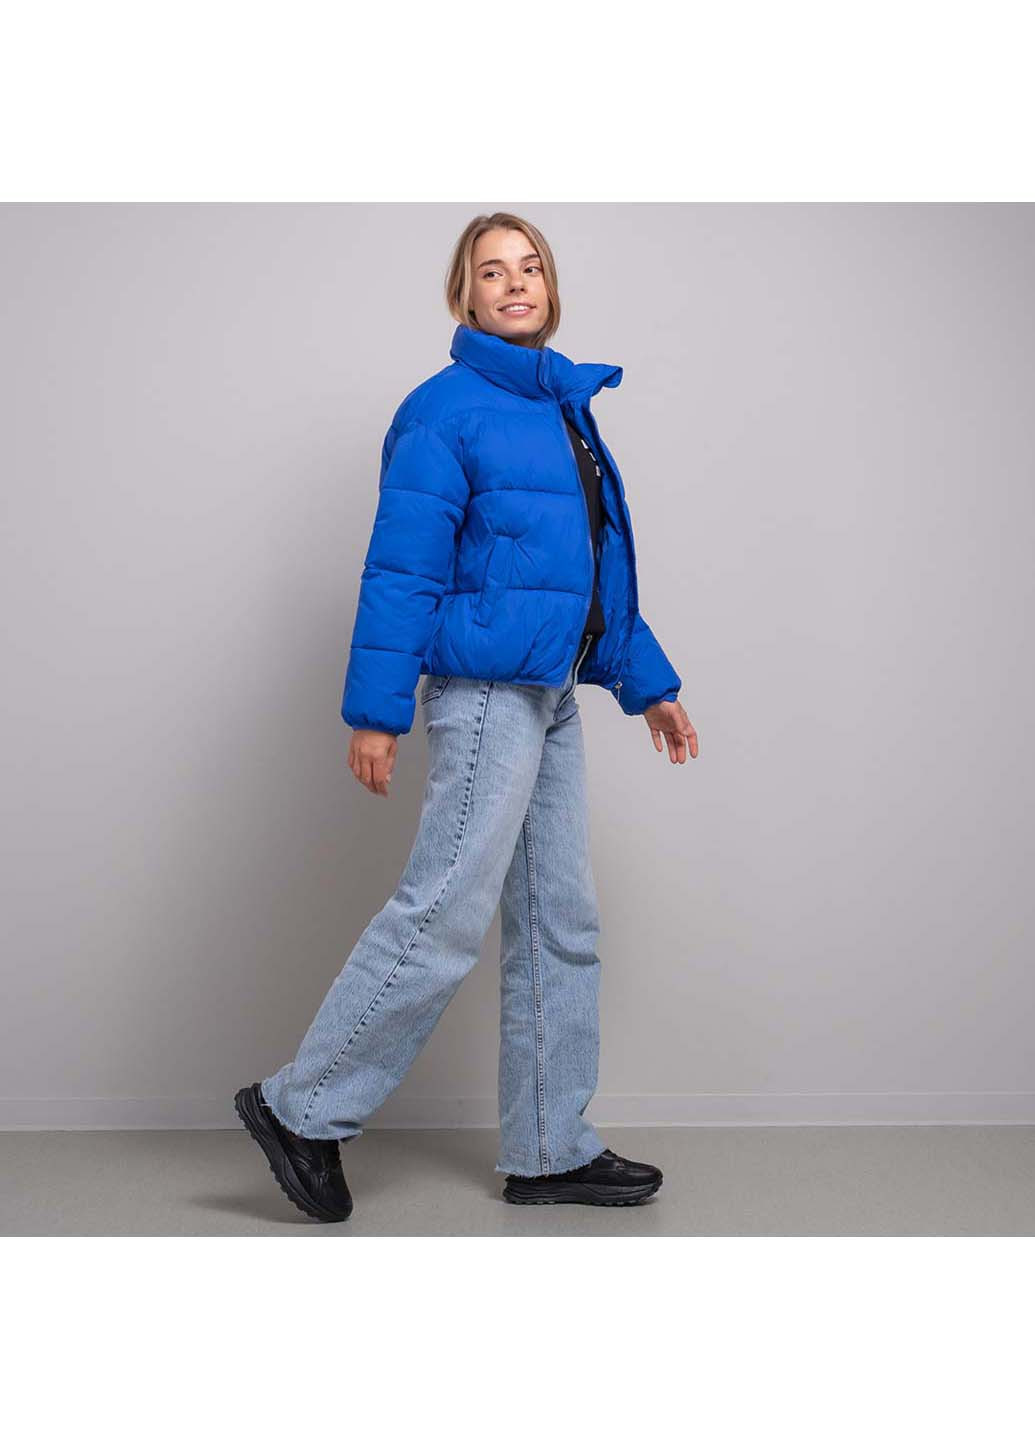 Синяя демисезонная куртка женская Fashion